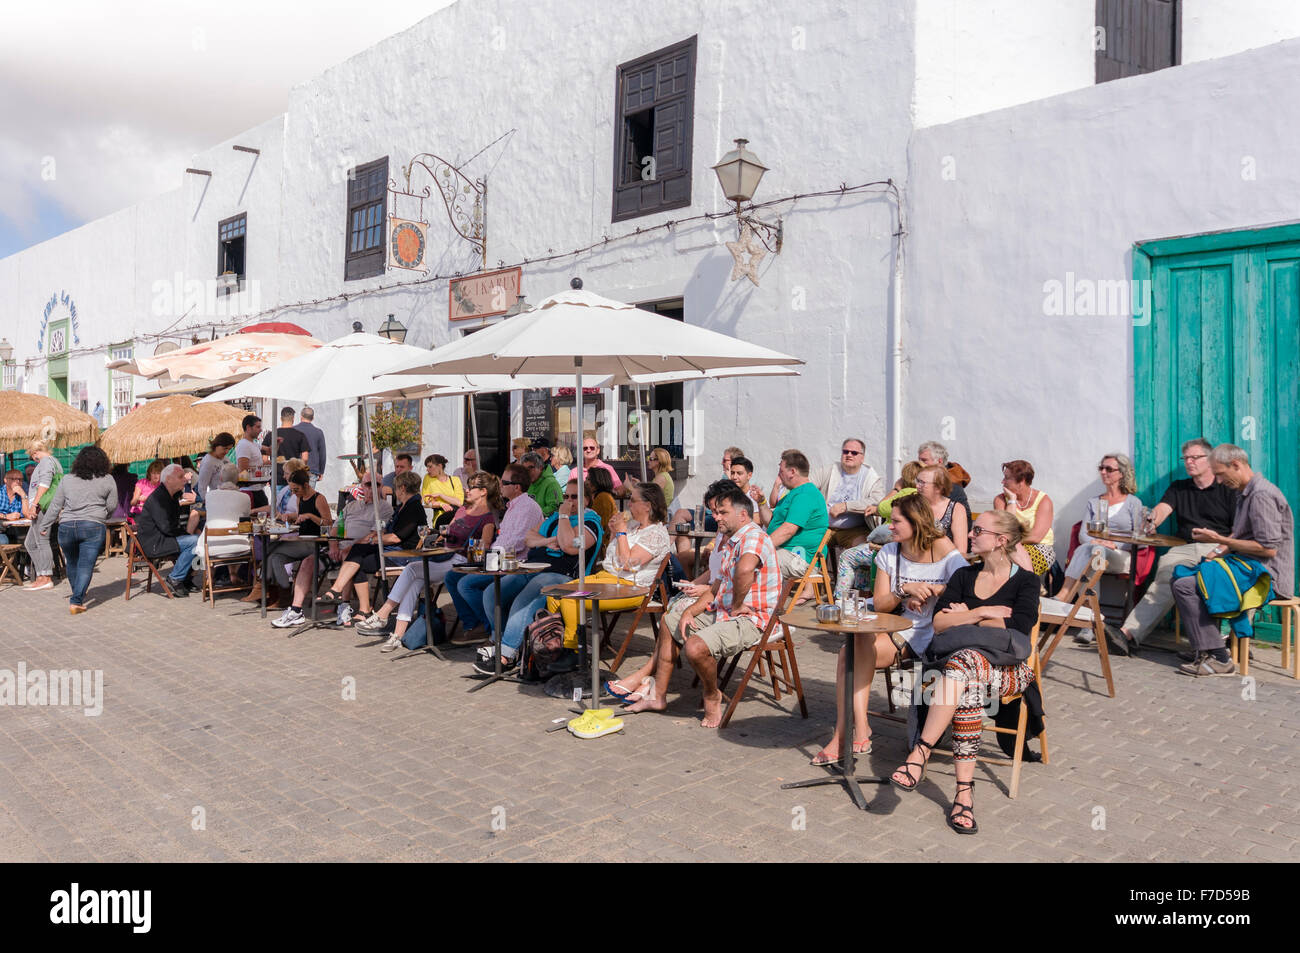 La gente relajándose fuera una cafetería restaurante en la Villa de Teguise Lanzarote Foto de stock